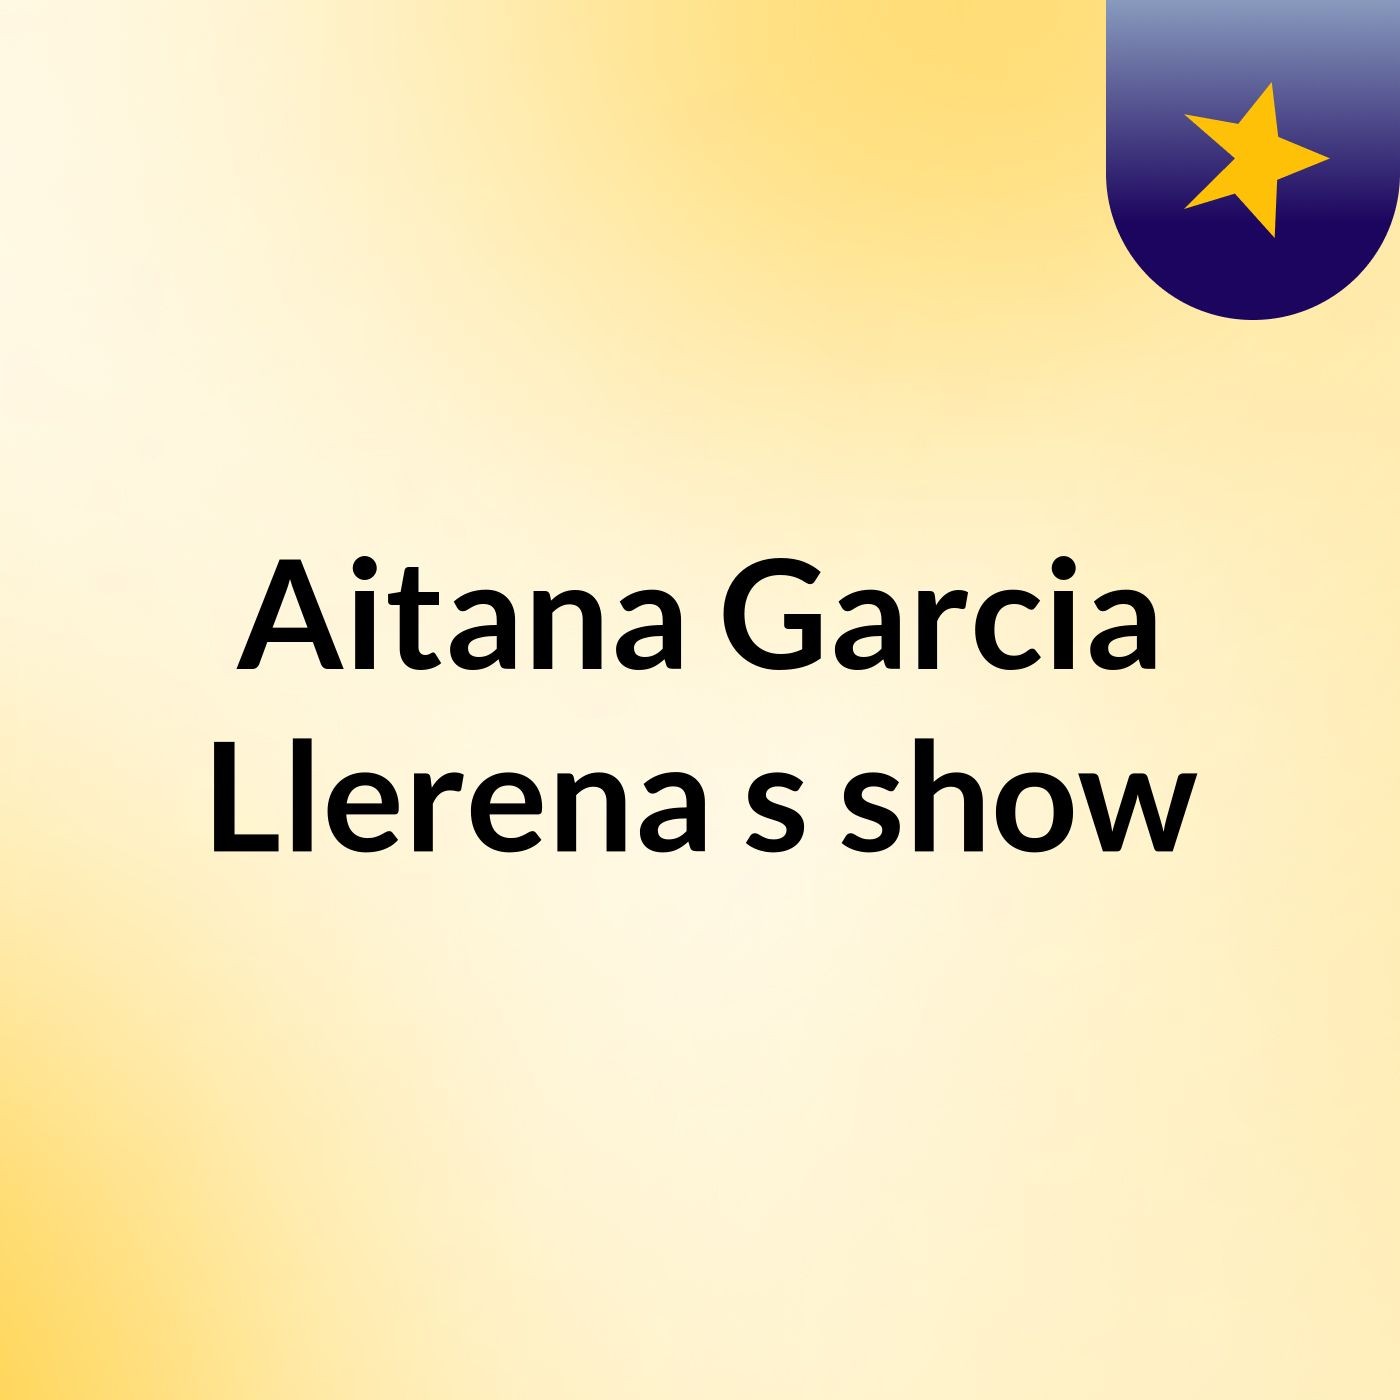 Aitana Garcia Llerena's show